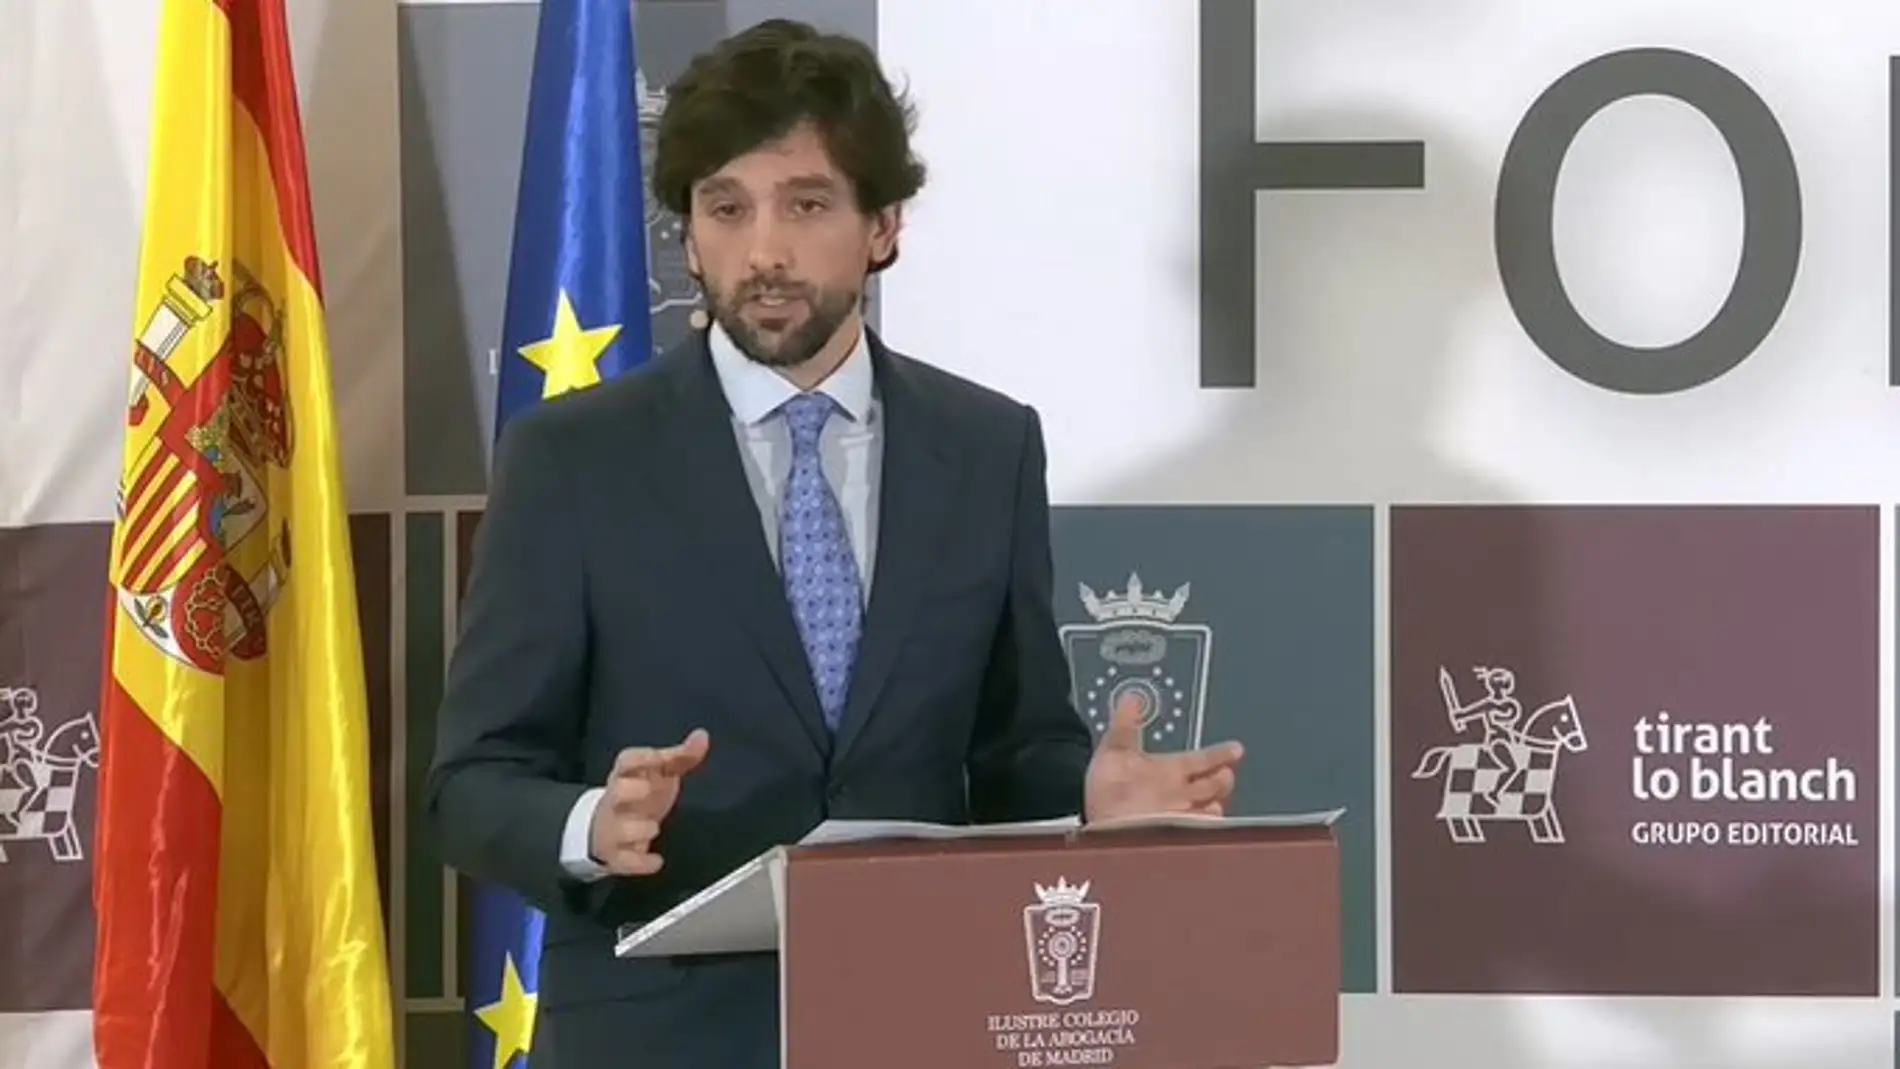 Adrián Vázquez alerta sobre la vía que impedirá amnistiar a Puigdemont a tiempo para las europeas/ @icam_es